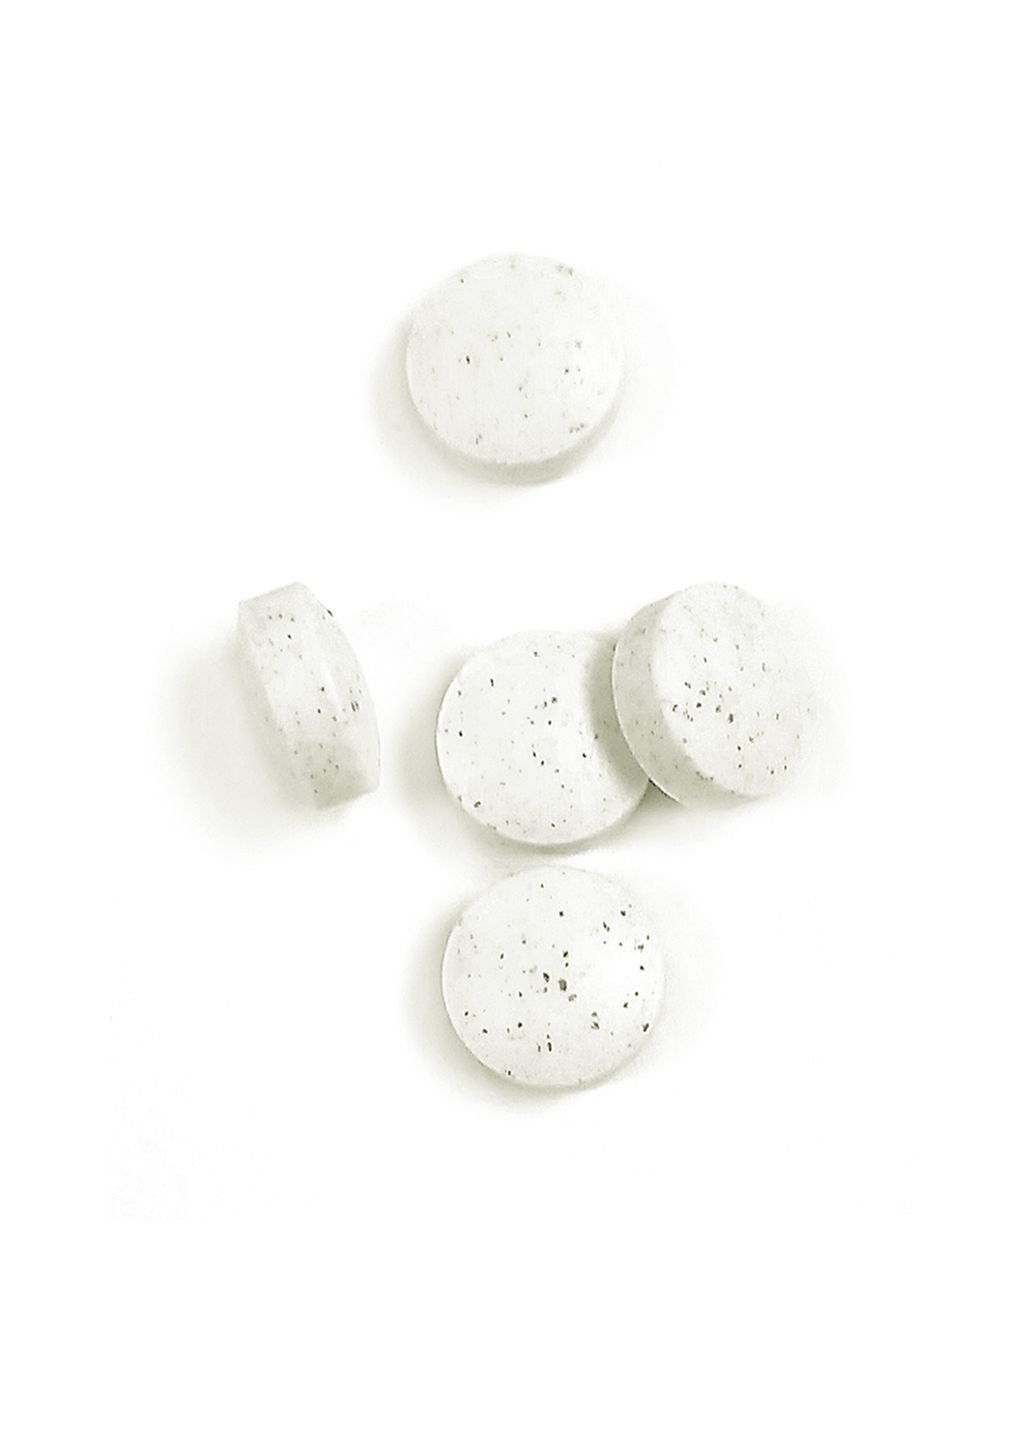 Тирамин, 155 мг, таблетки, покрытые кишечнорастворимой оболочкой, 40 шт.